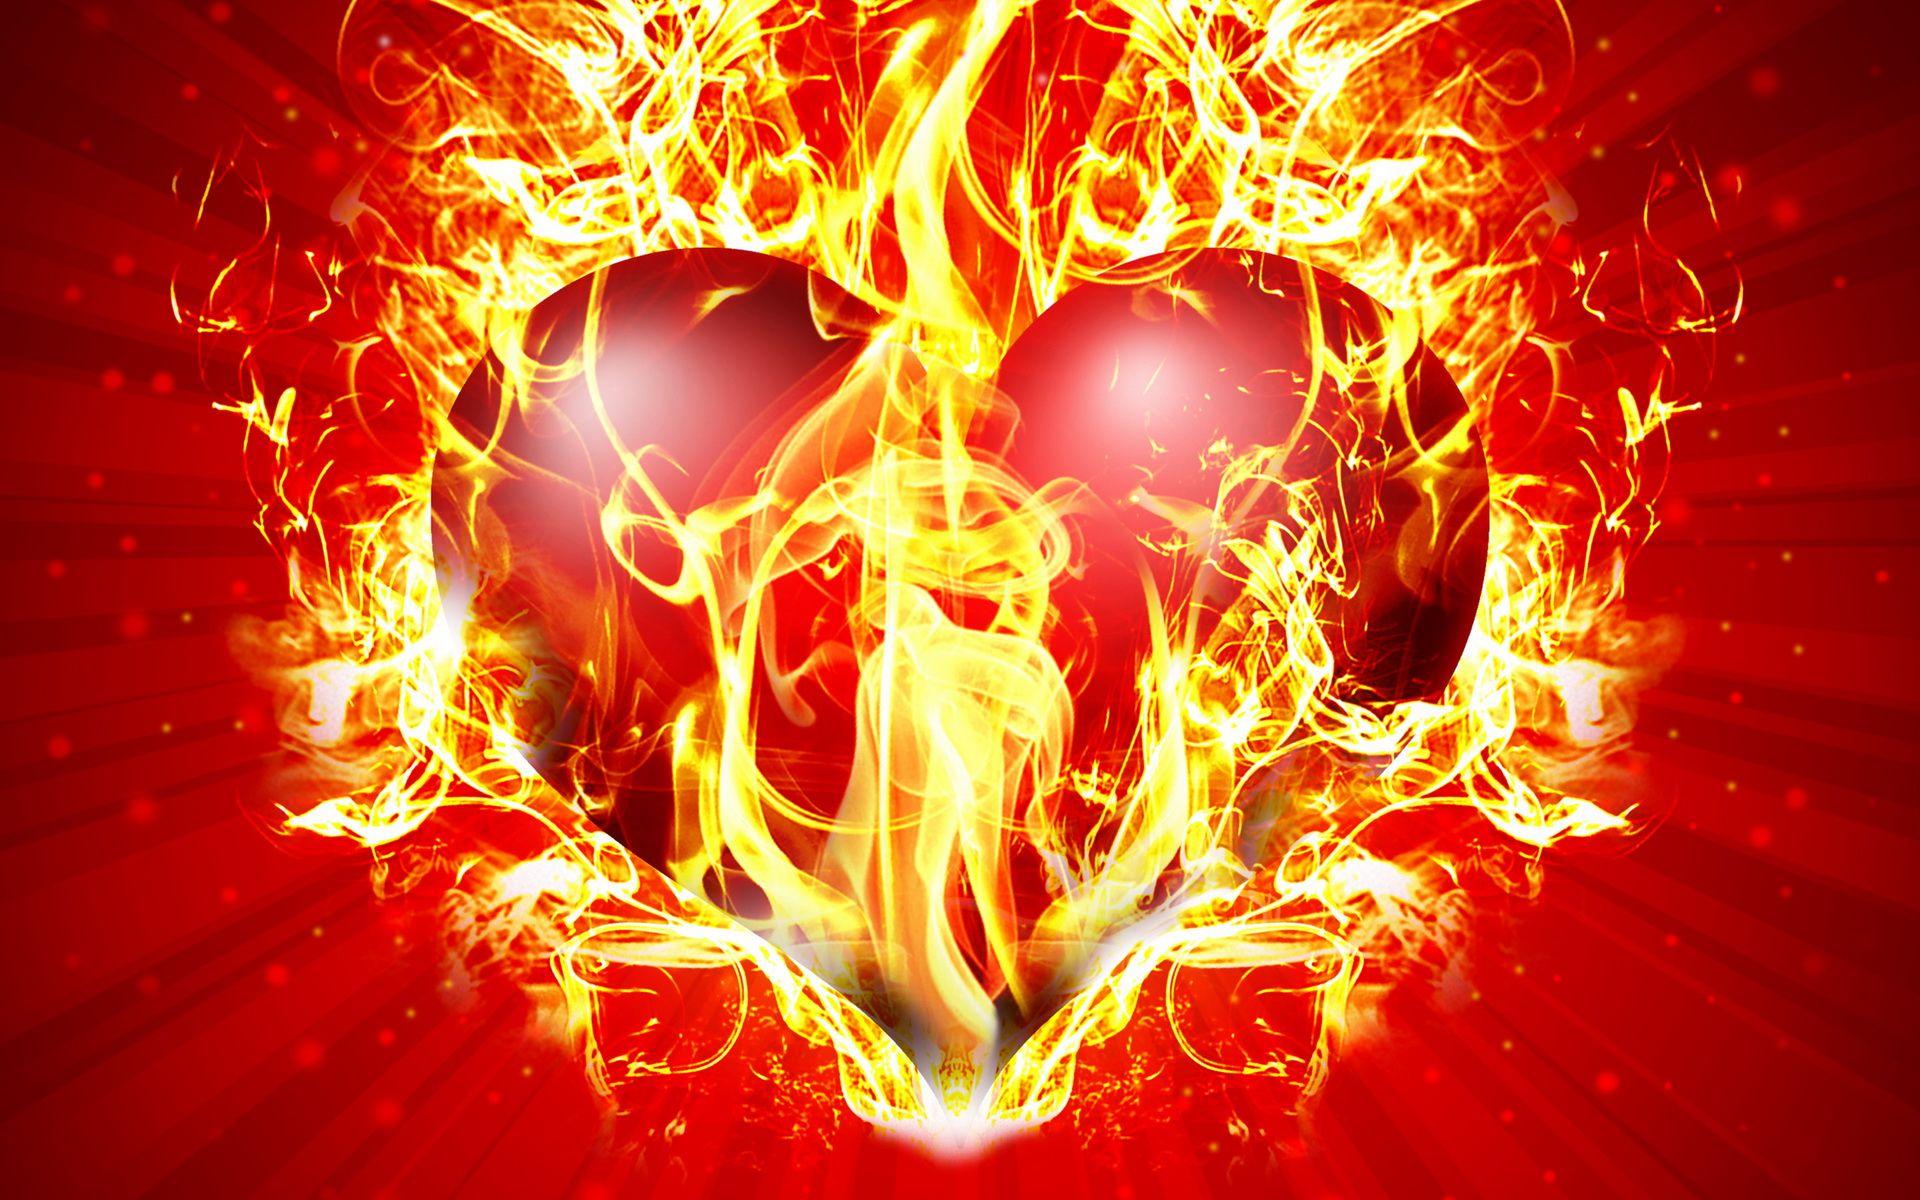 Fire Heart wallpaper HD free download